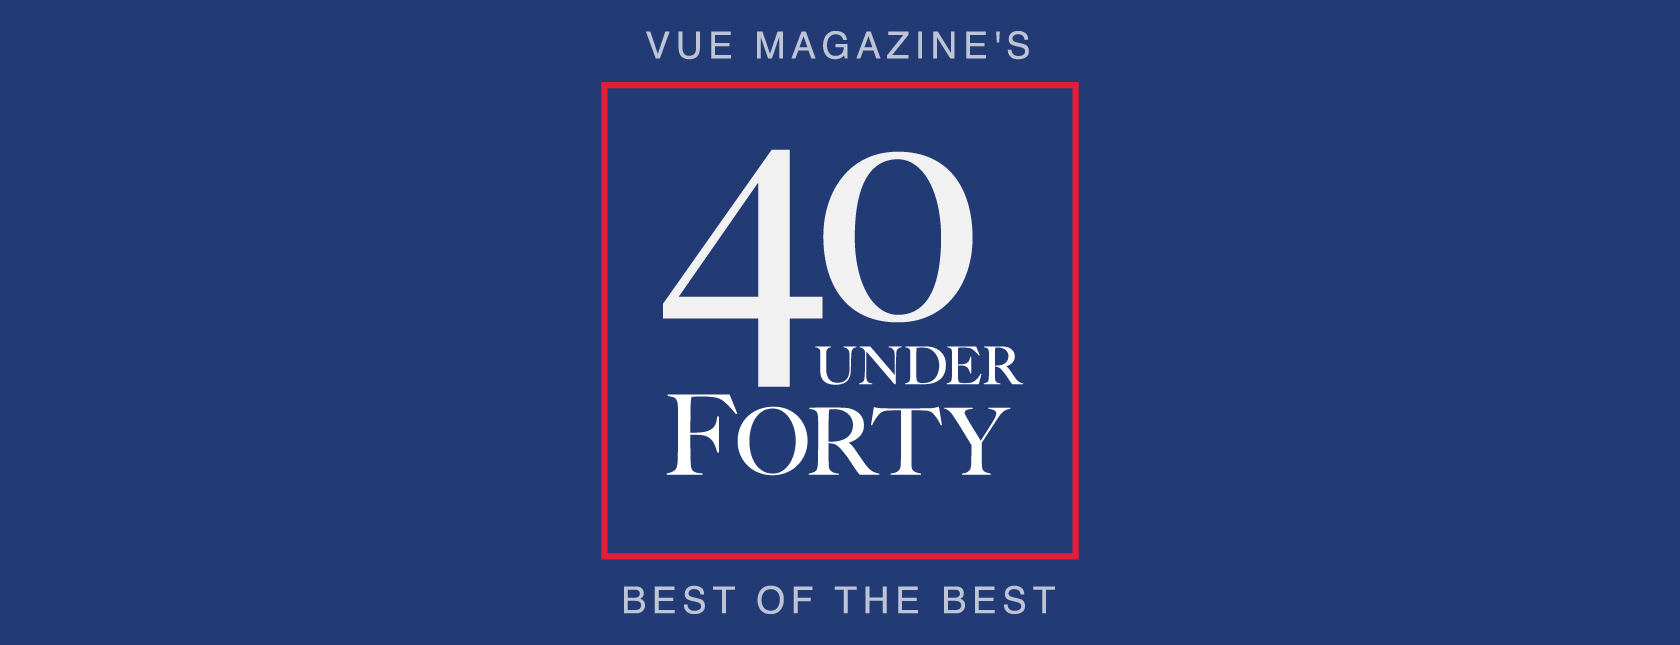 FNB & VUE Magazine Present 40 Under Forty FNB & VUE Magazine Present 40 Under Forty